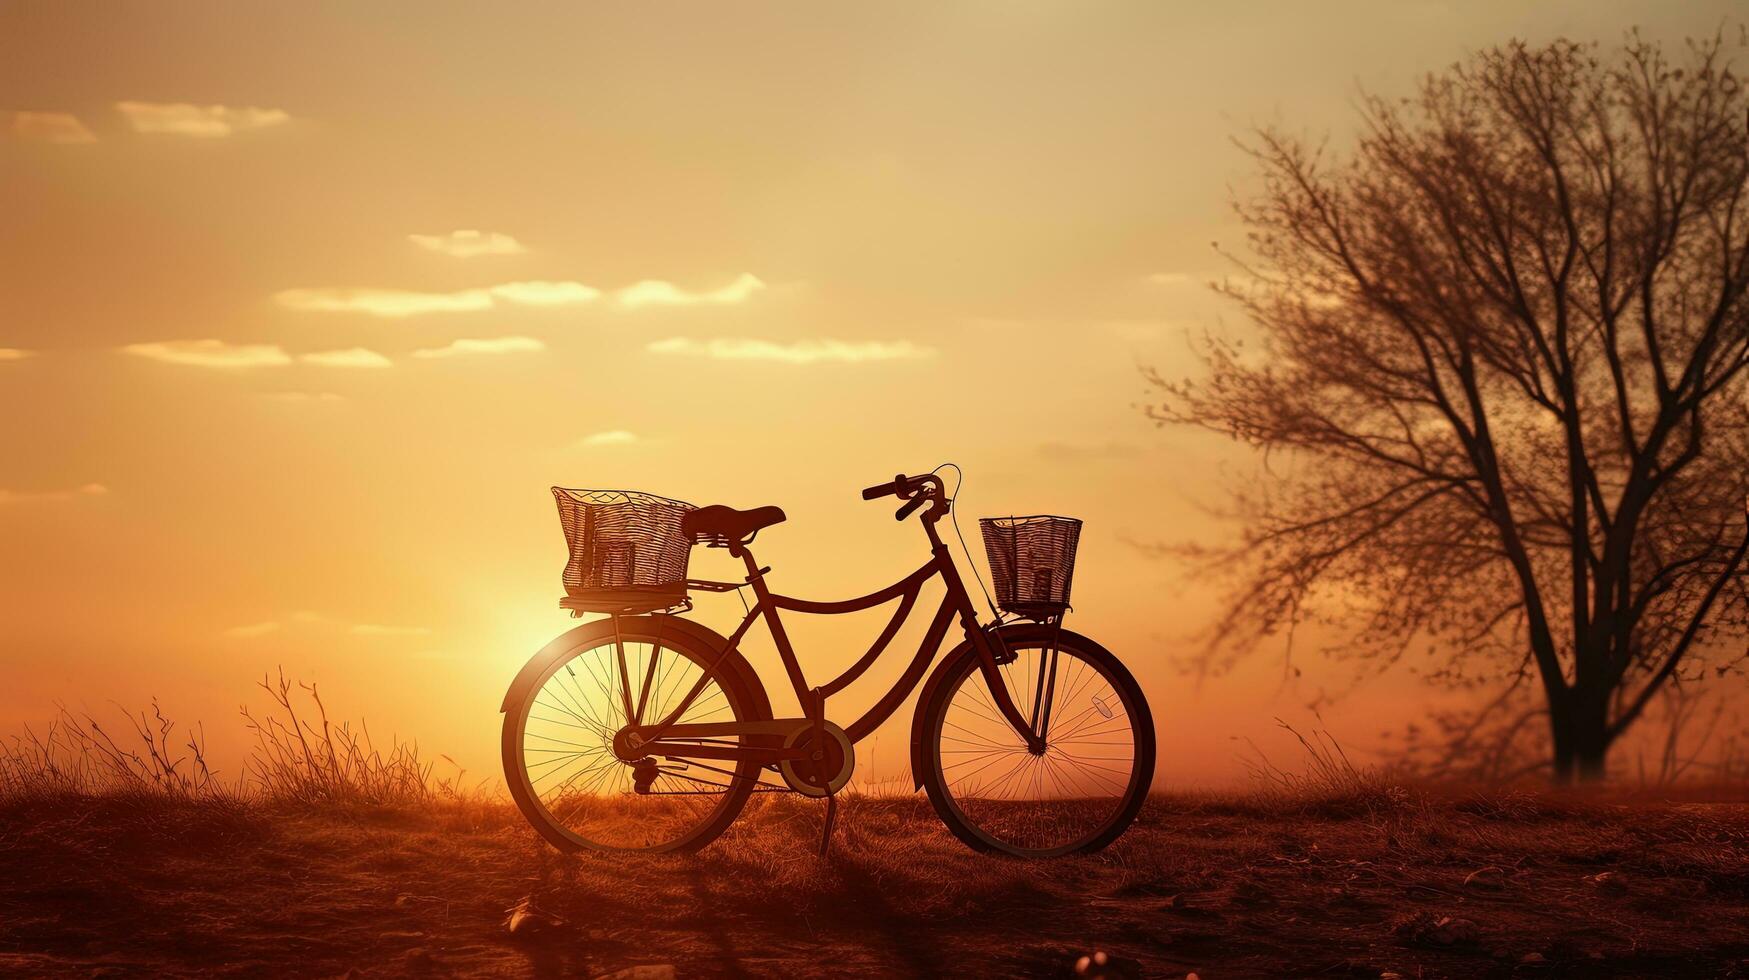 puesta de sol silueta de dos bicicletas en un verano paisaje foto